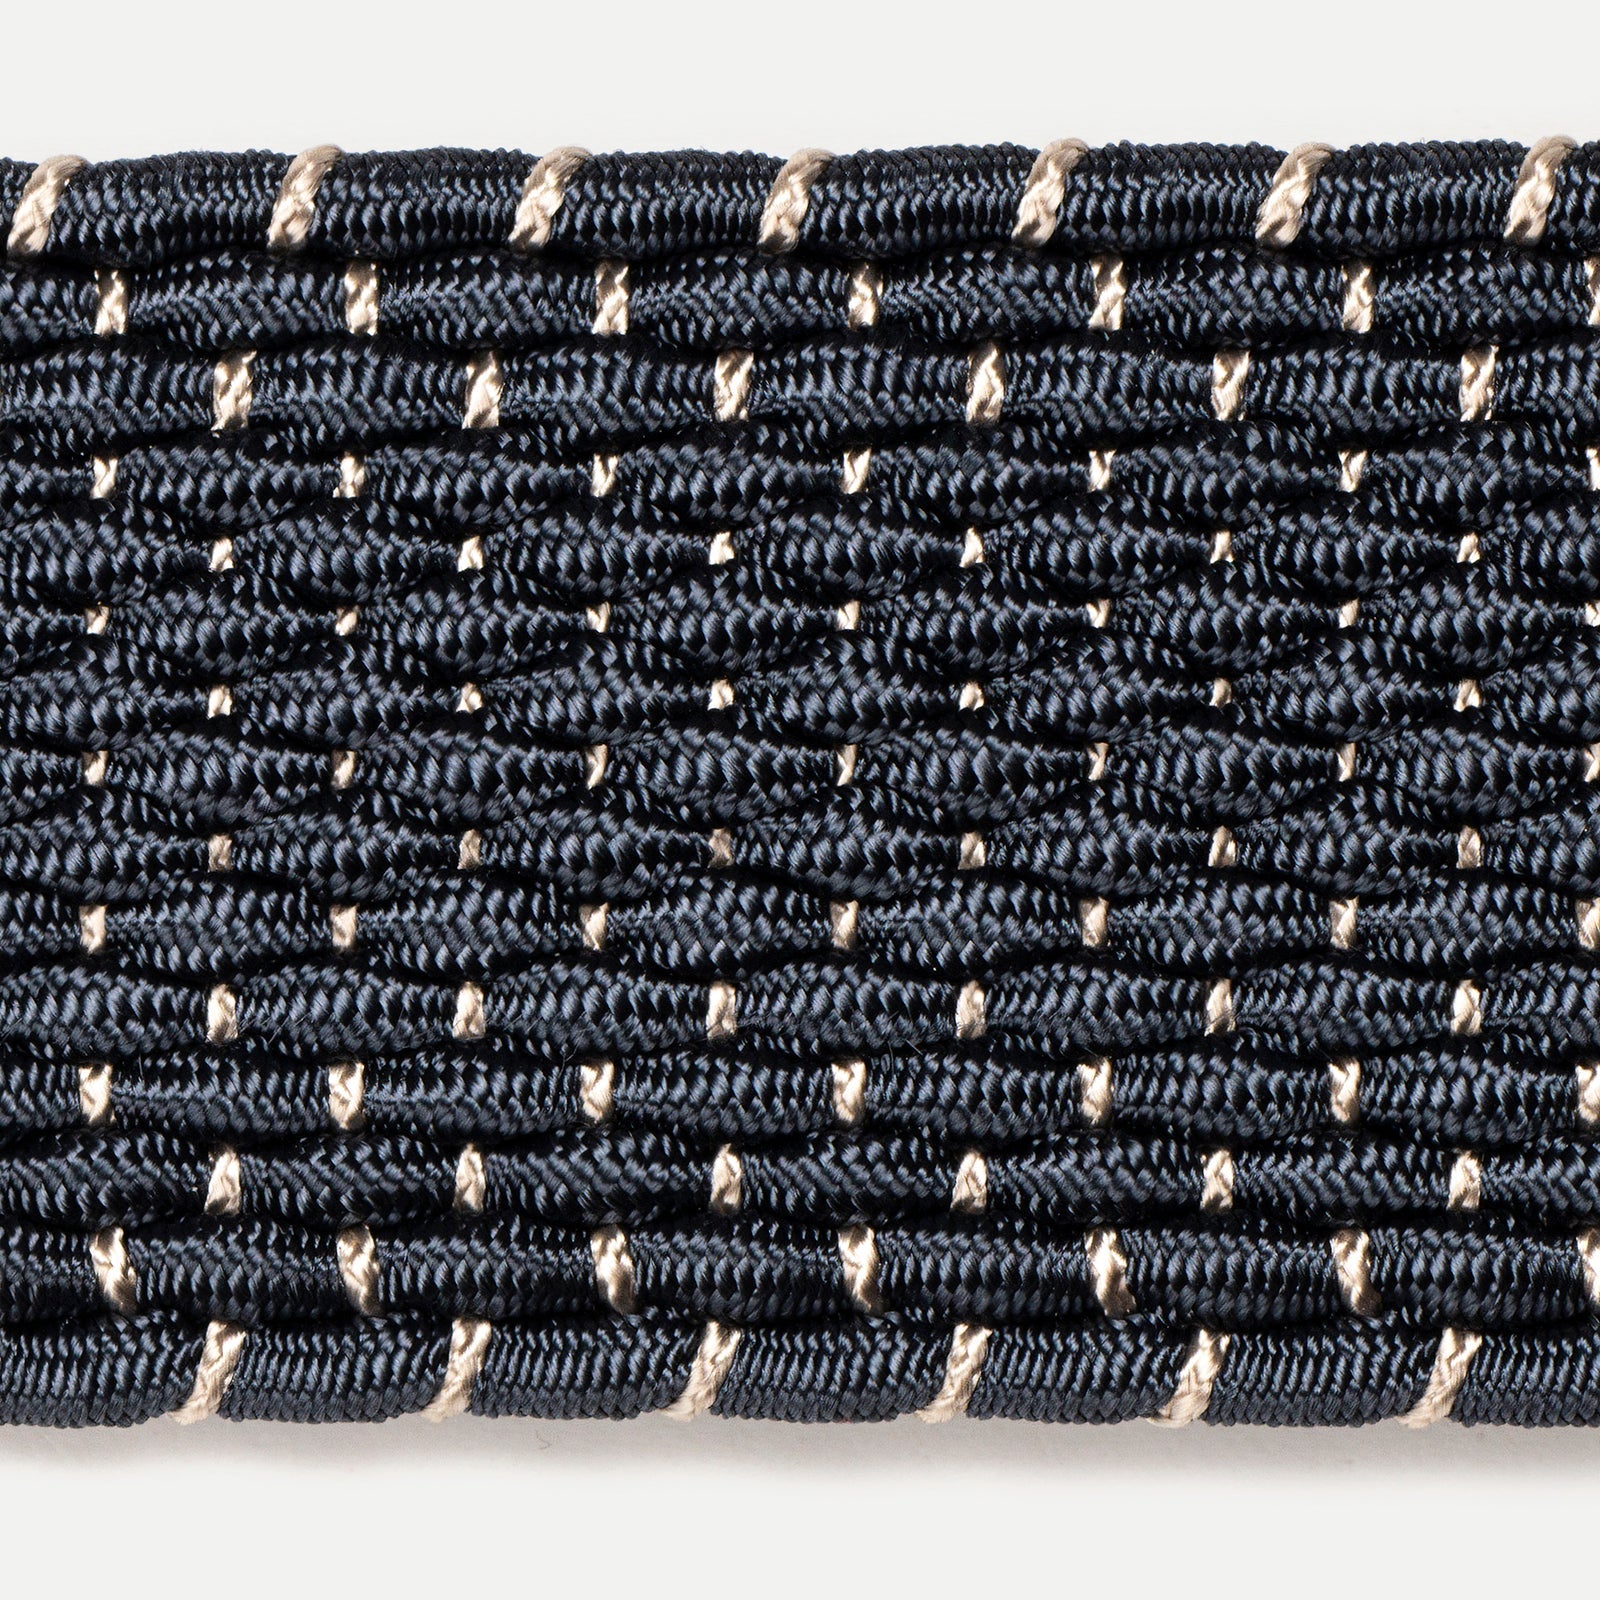 Belt 24/40 bicolor 100% Capri blue and natural color leather belt